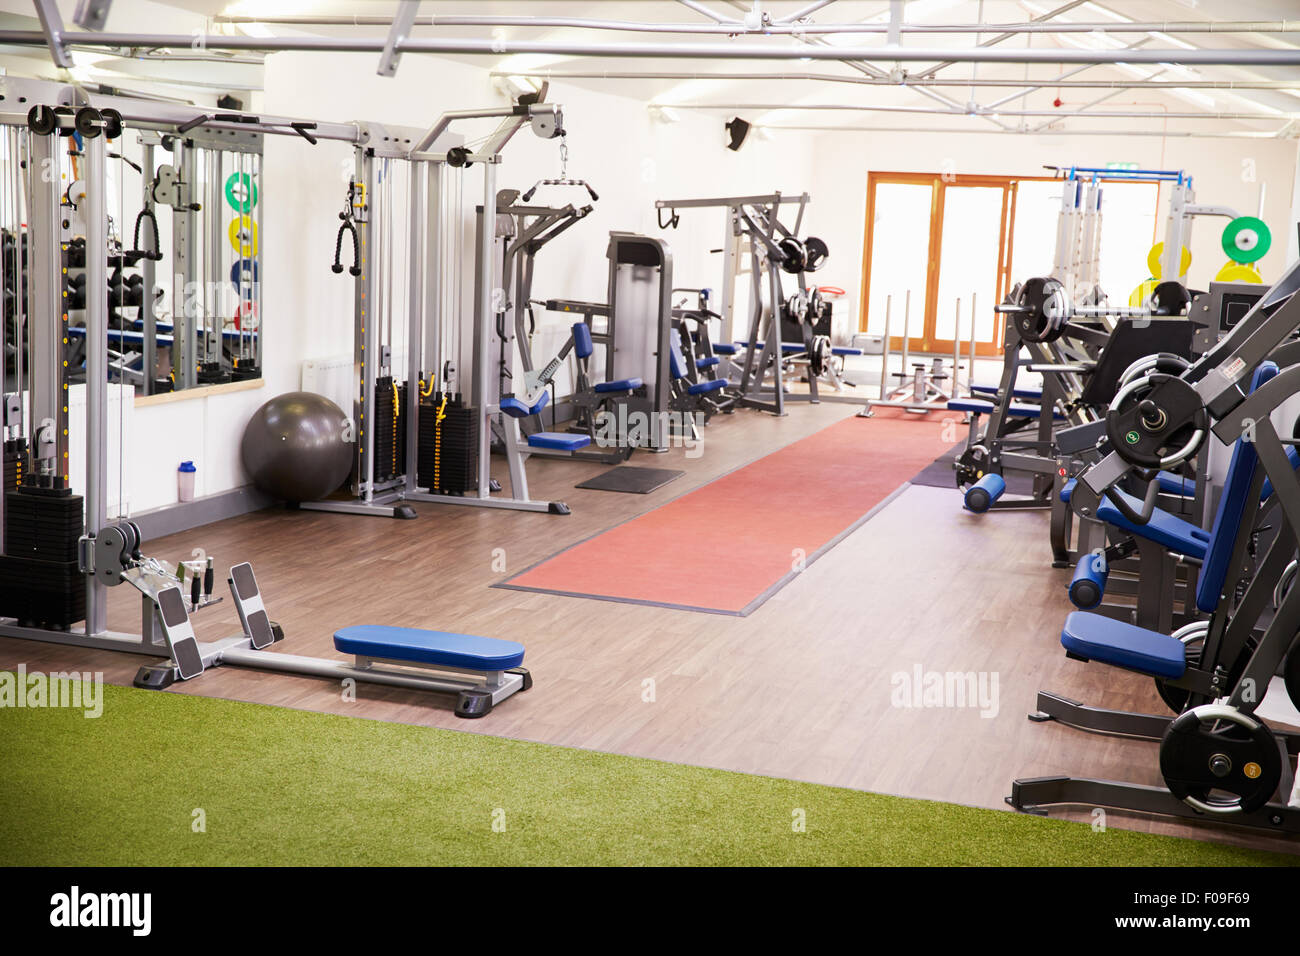 Intérieur d'une salle de sport avec appareils de fitness Banque D'Images